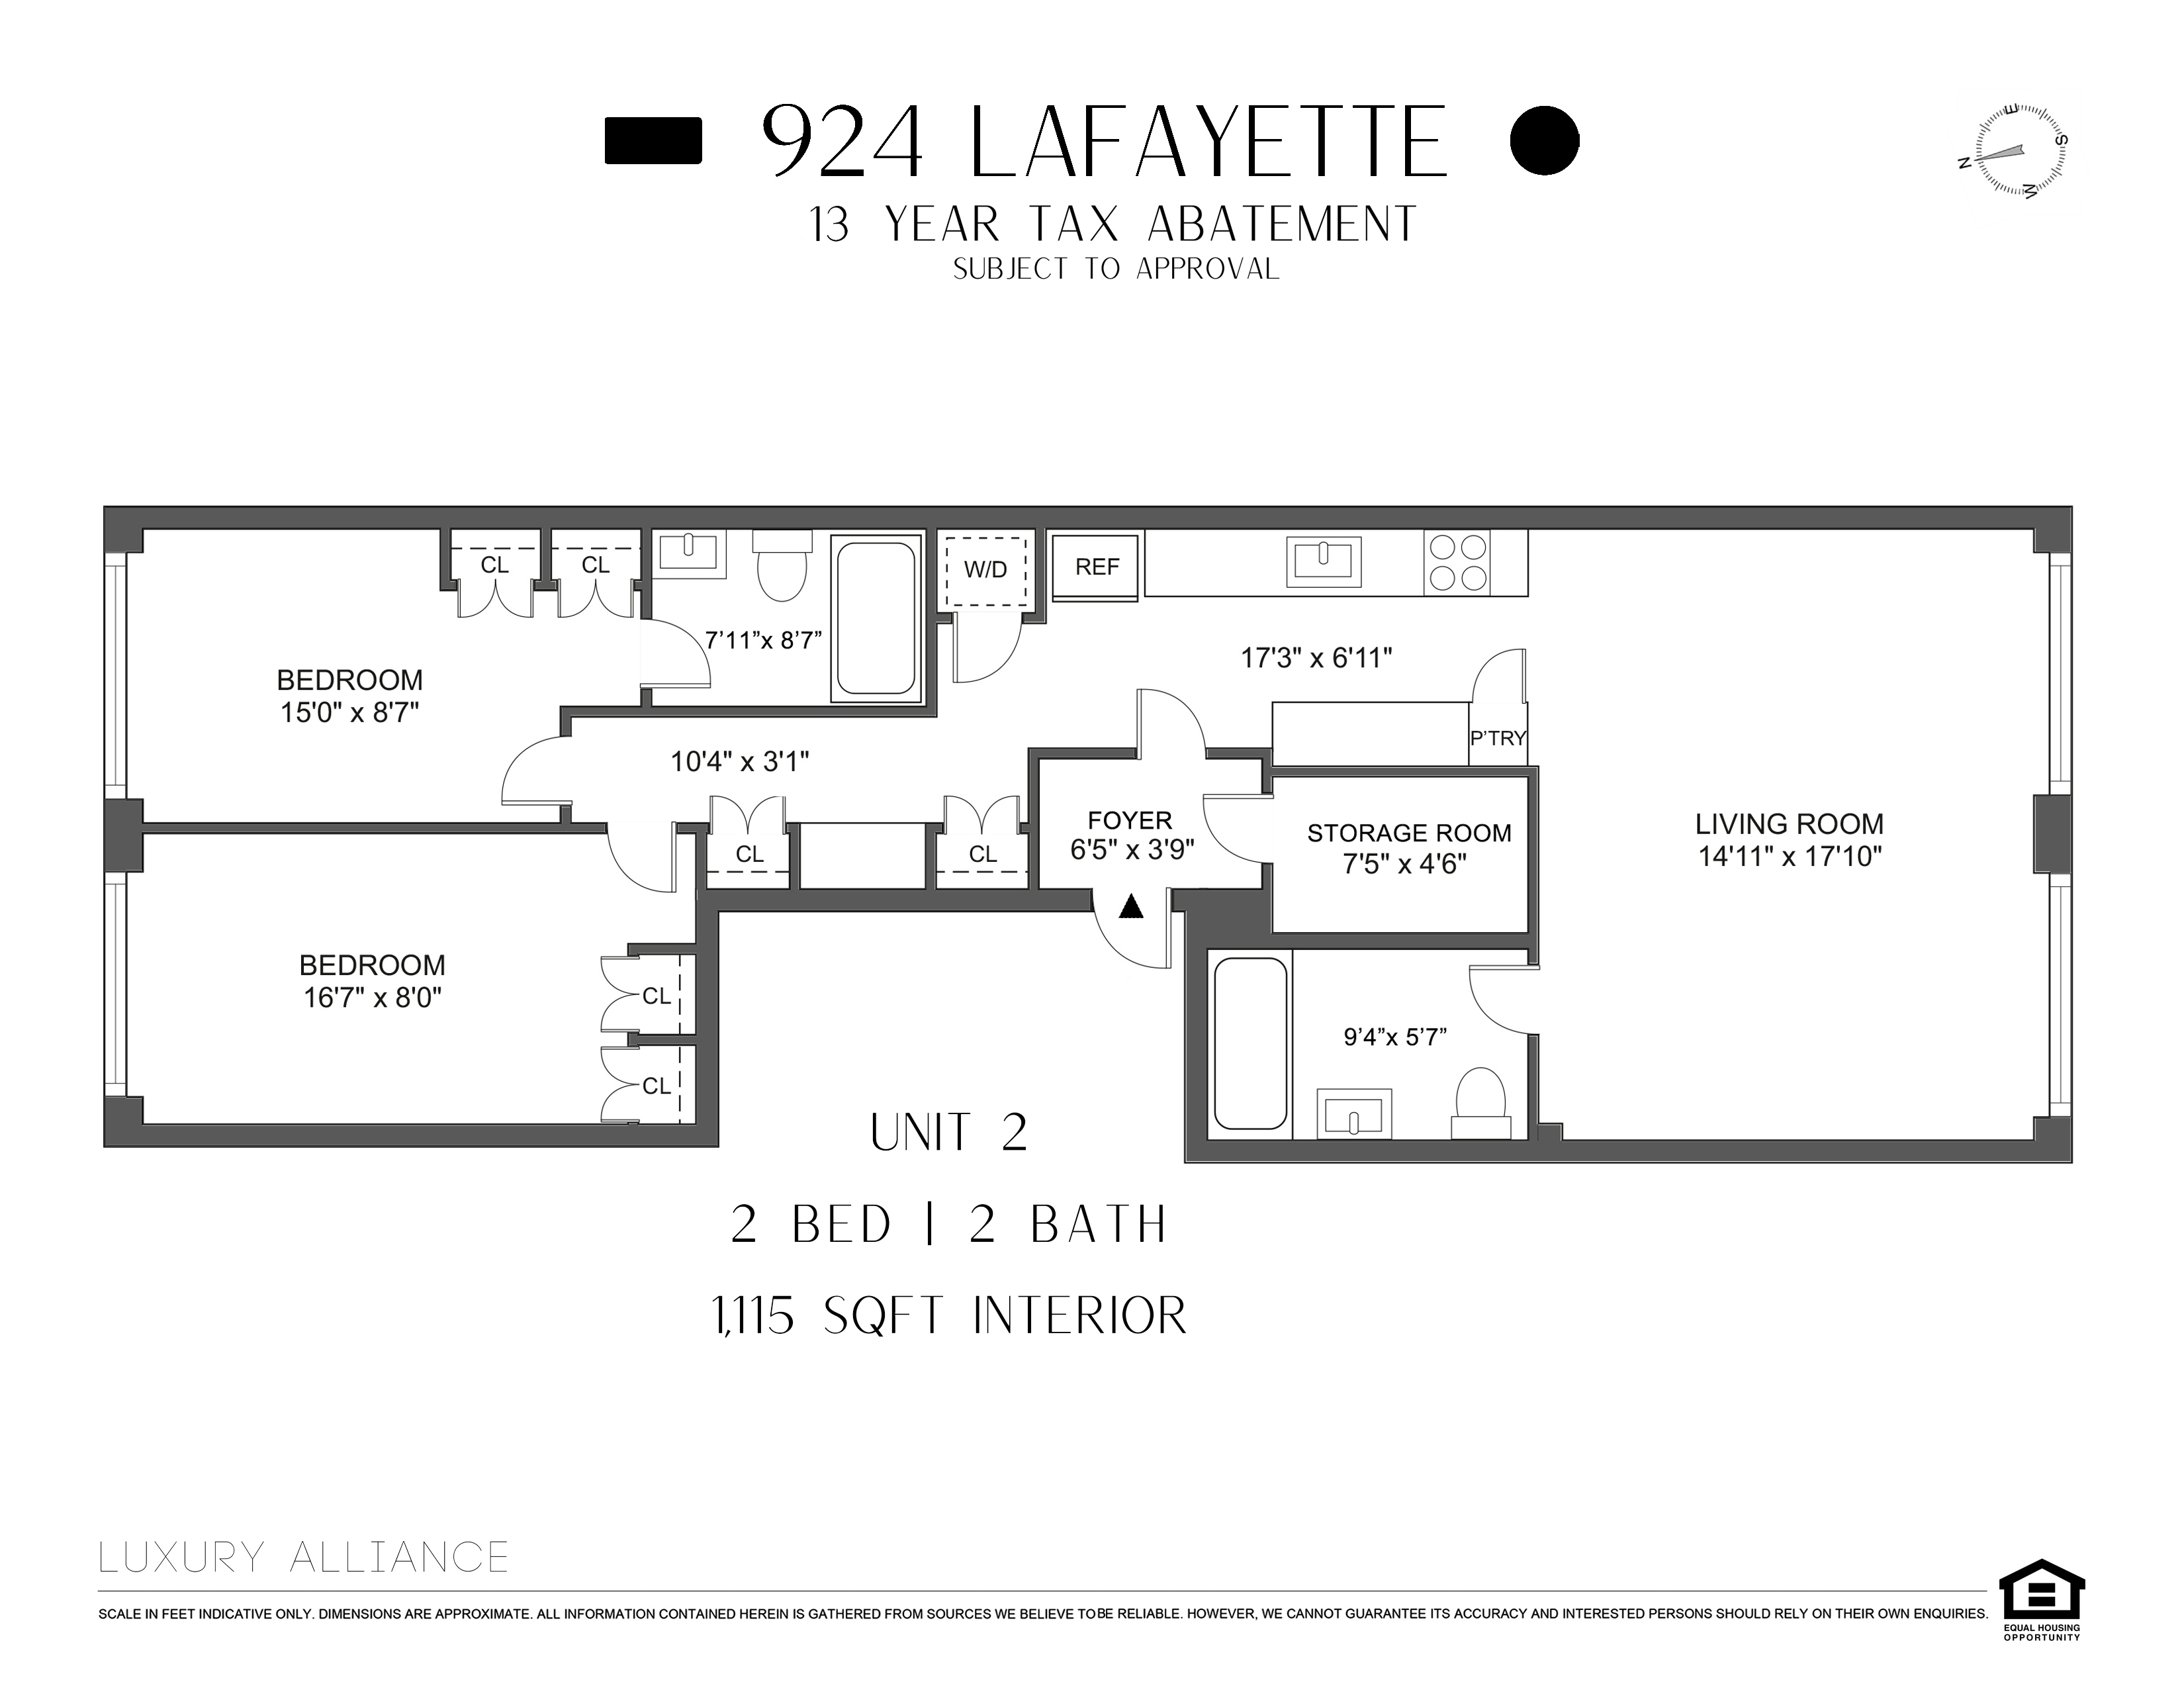 Floorplan for 924 Lafayette Avenue, 2